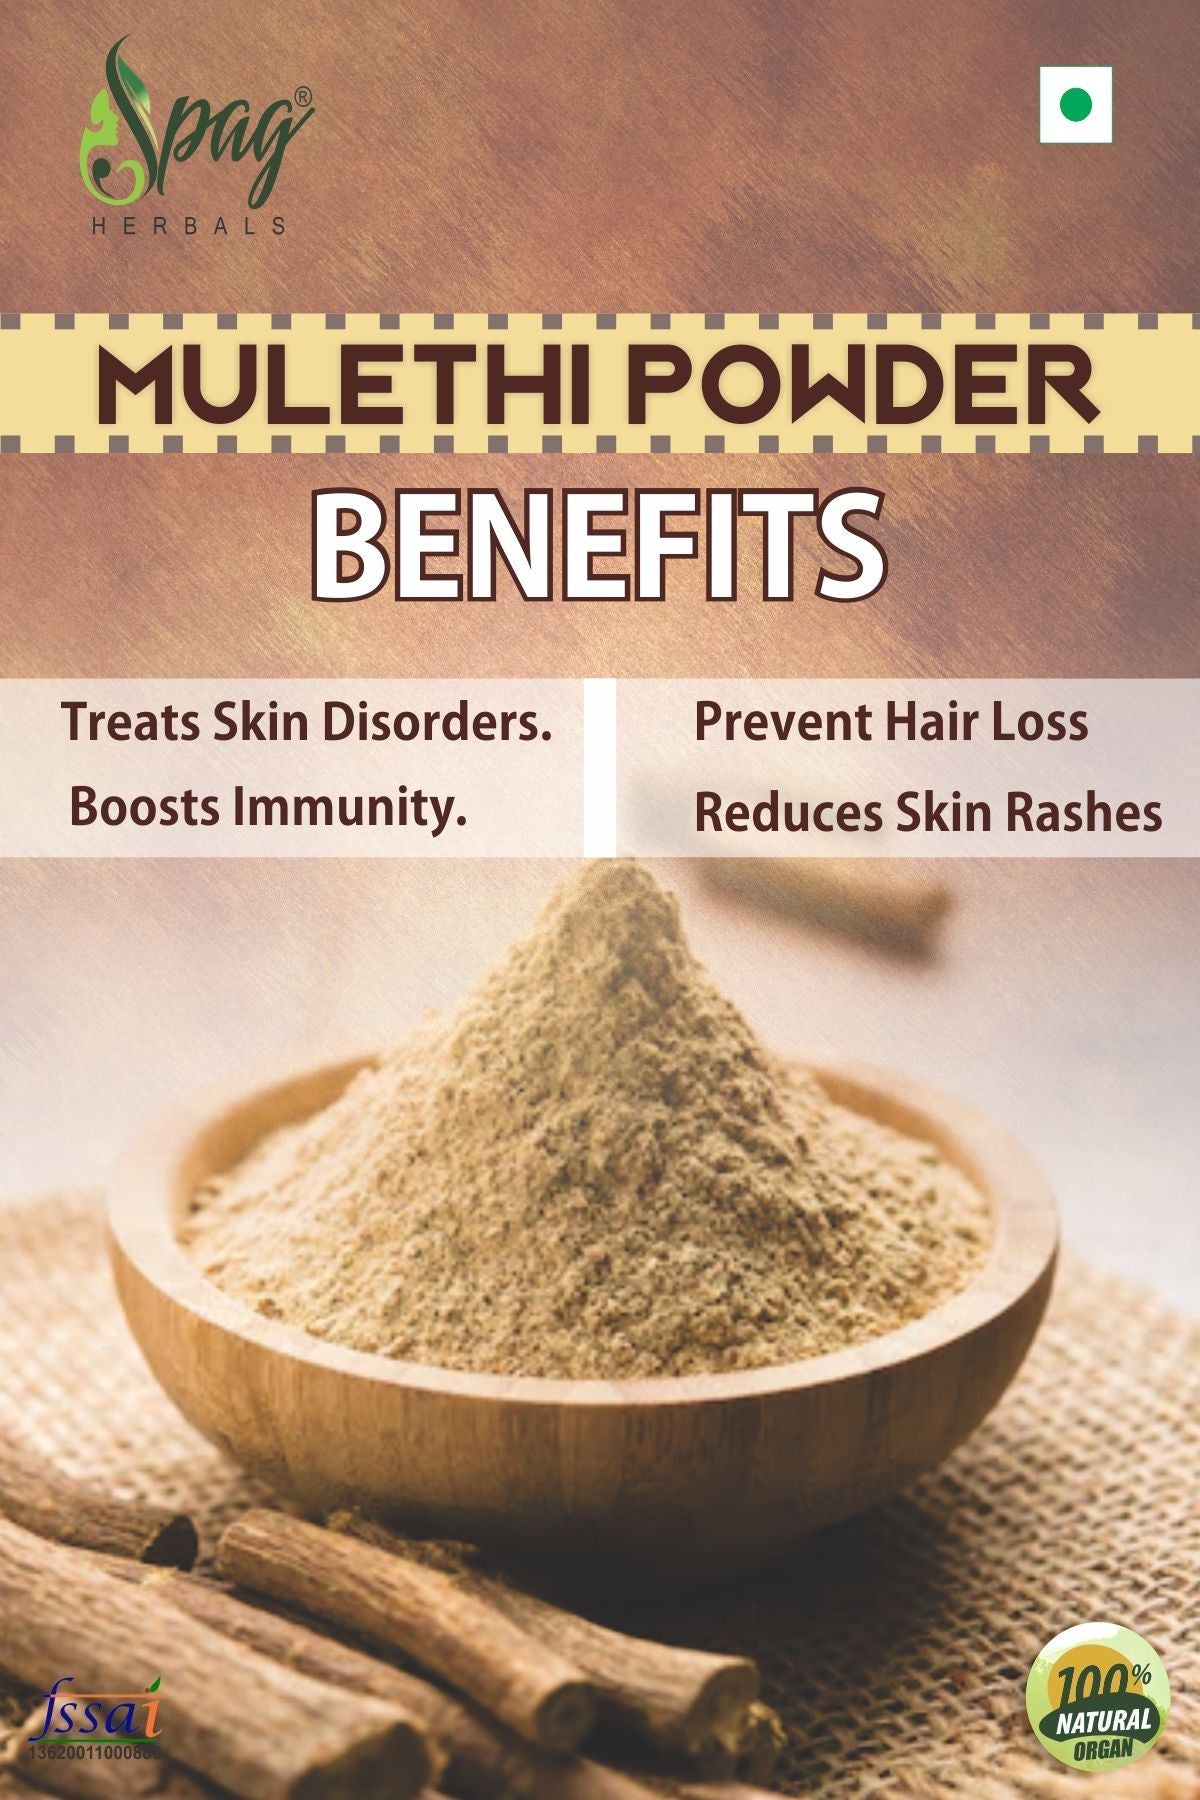 Spag Herbals Mulethi Powder